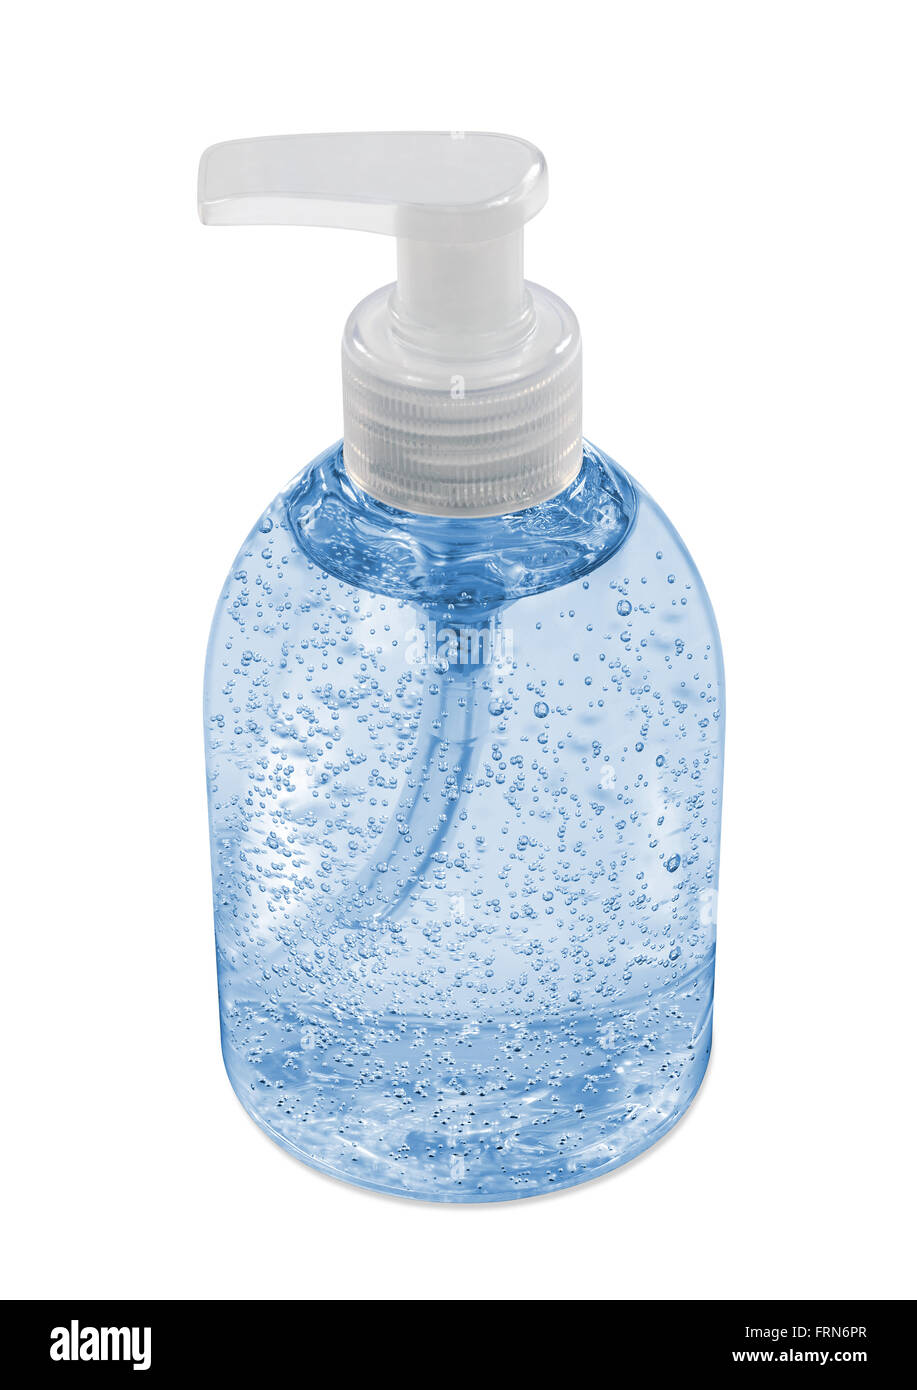 Liquid soap dispenser bottle Stock Photo